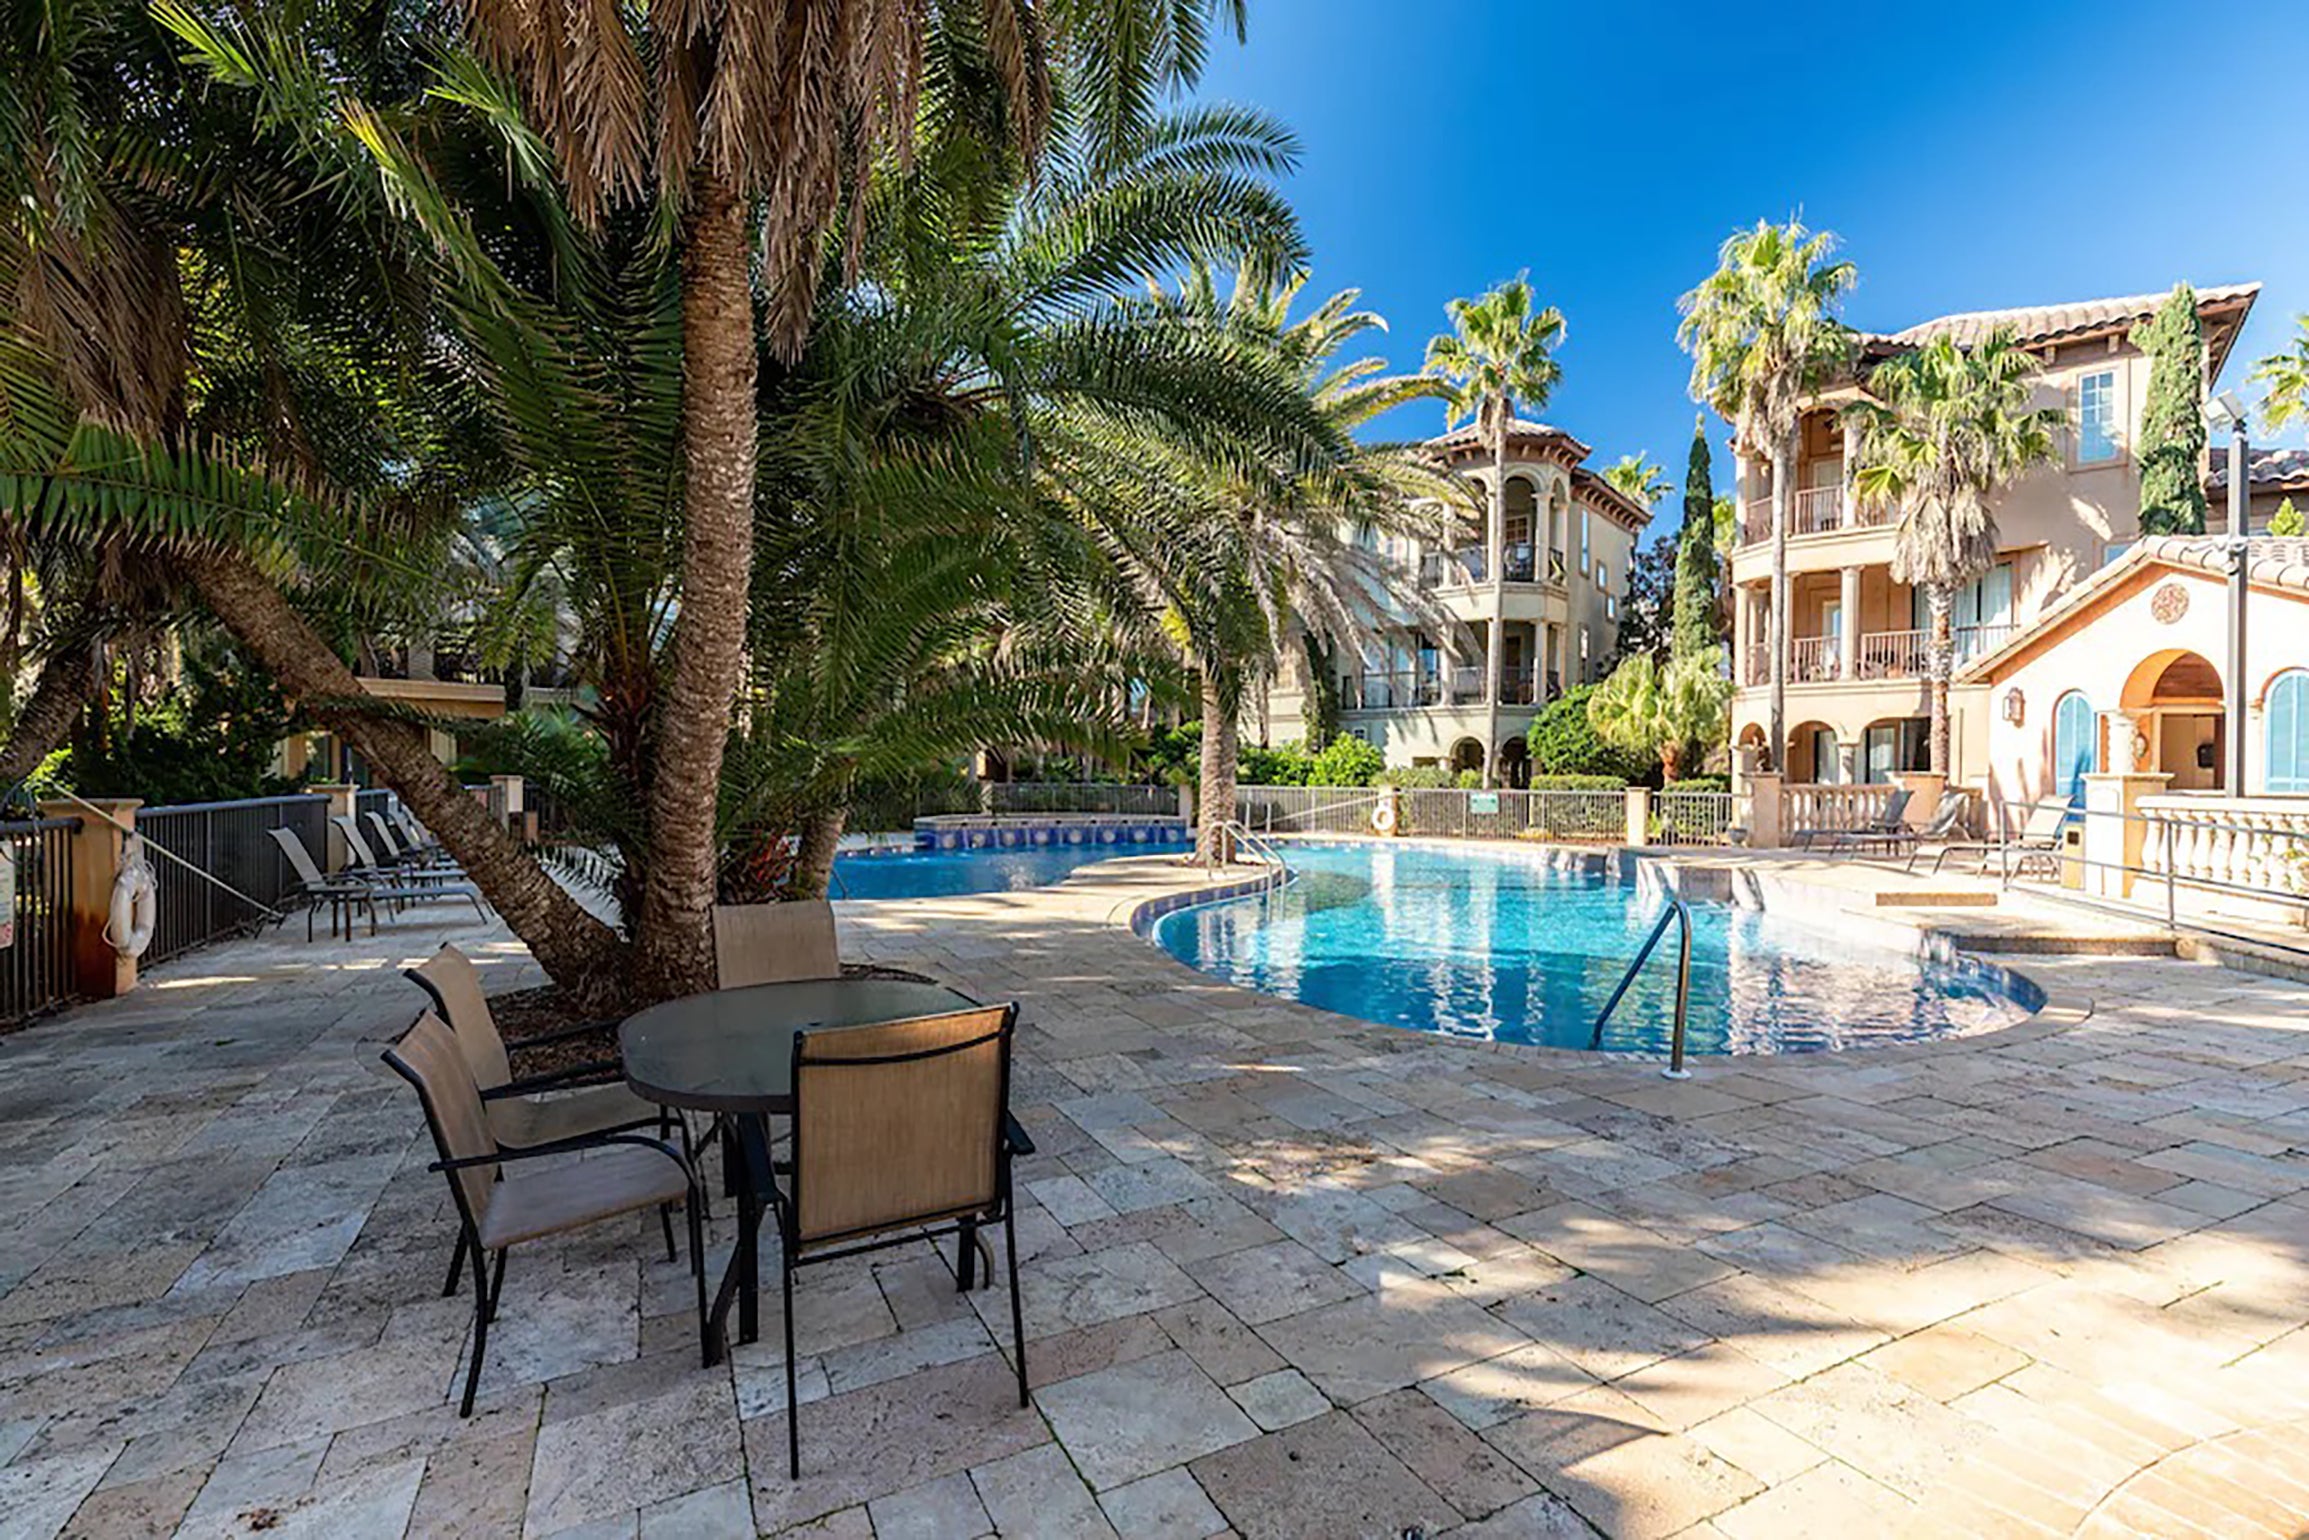 St Tropez pool